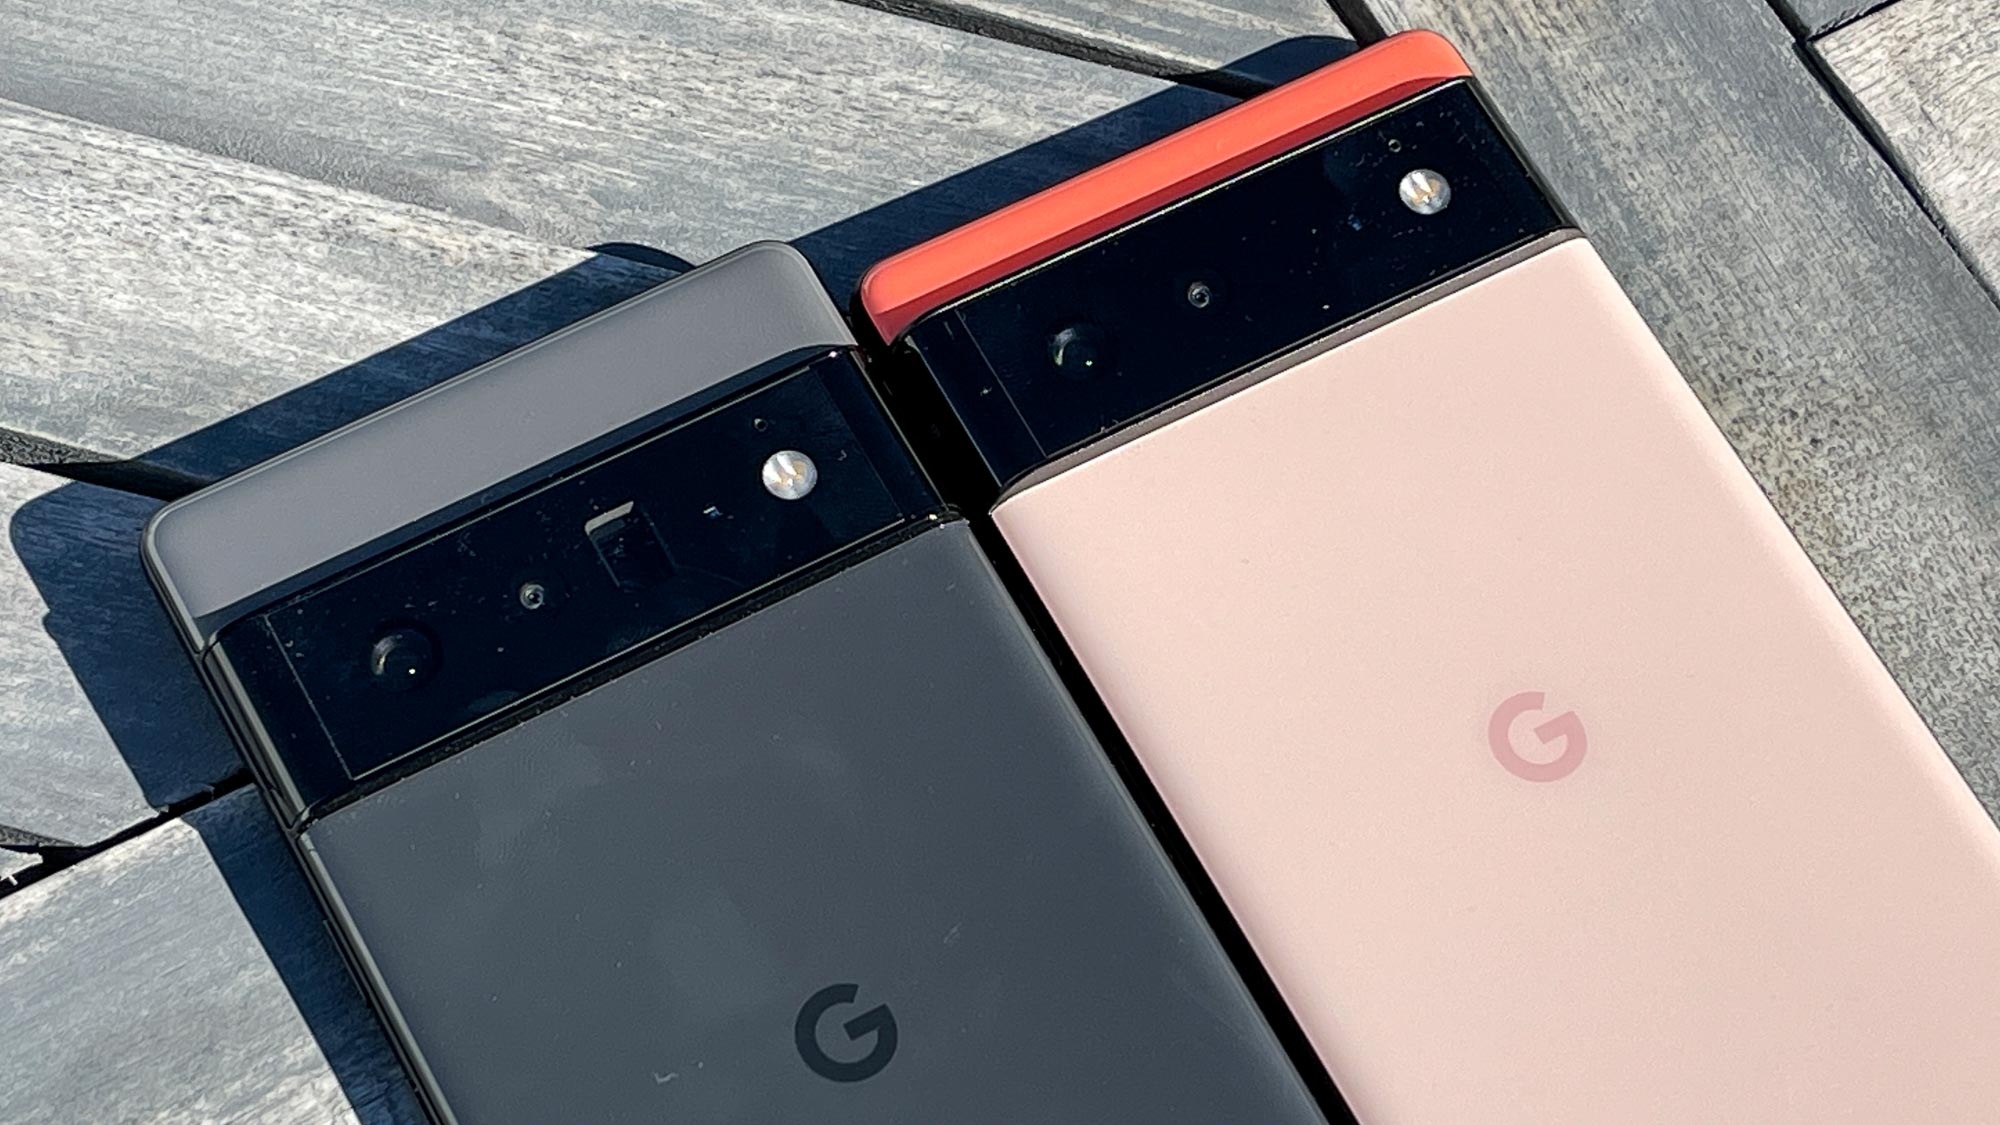 El Google Pixel 6 Pro (en negro) y el Google Pixel 6 (en coral) colocados uno al lado del otro en una terraza de madera